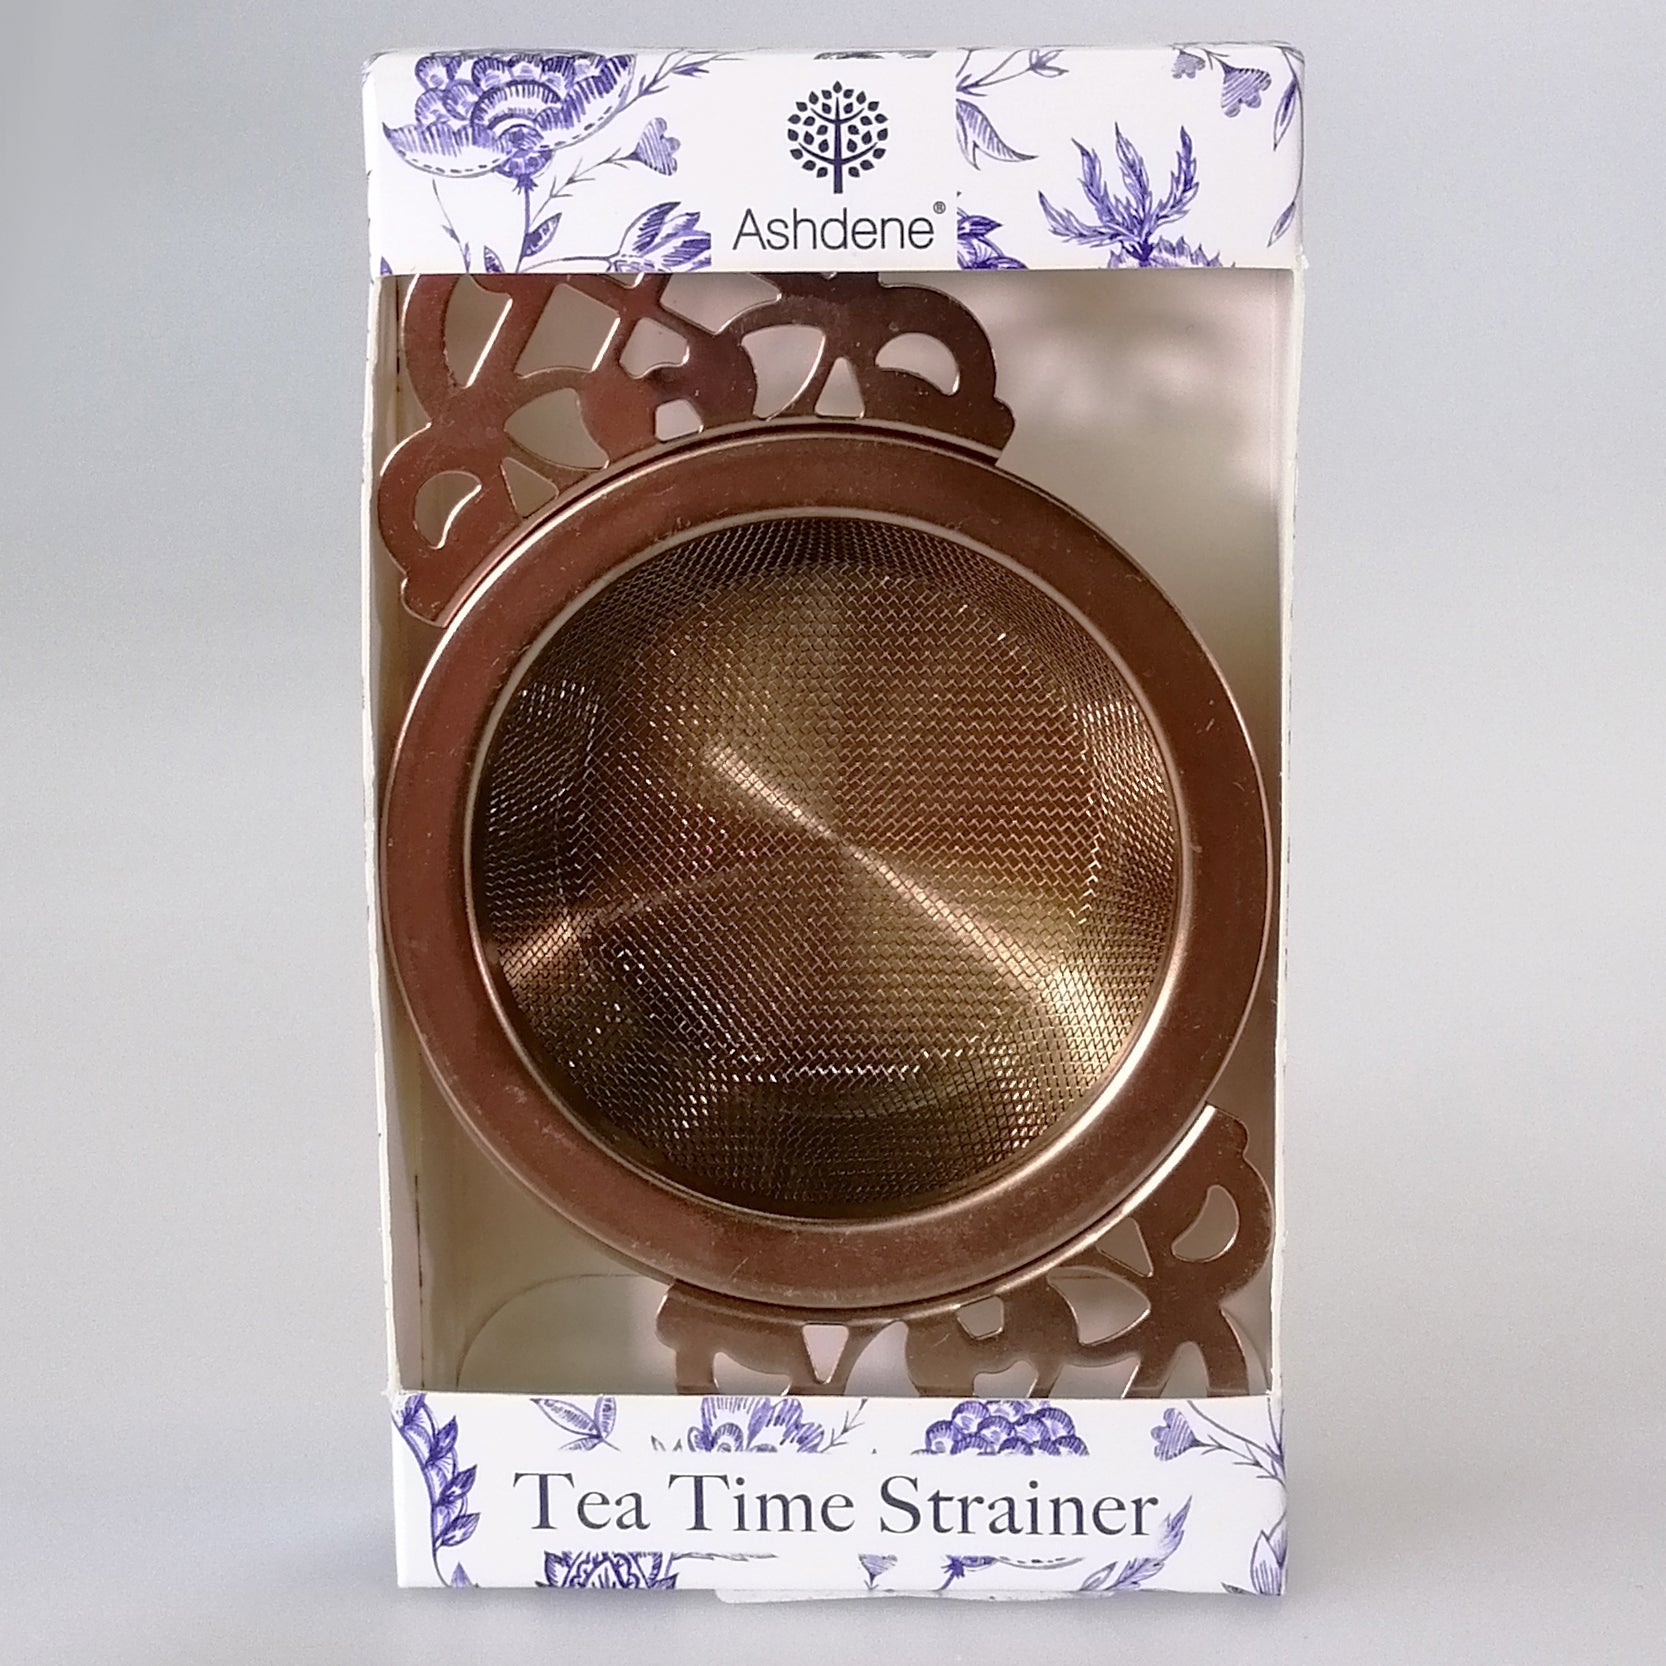 Ashdene - Assorted Tea Time Strainer